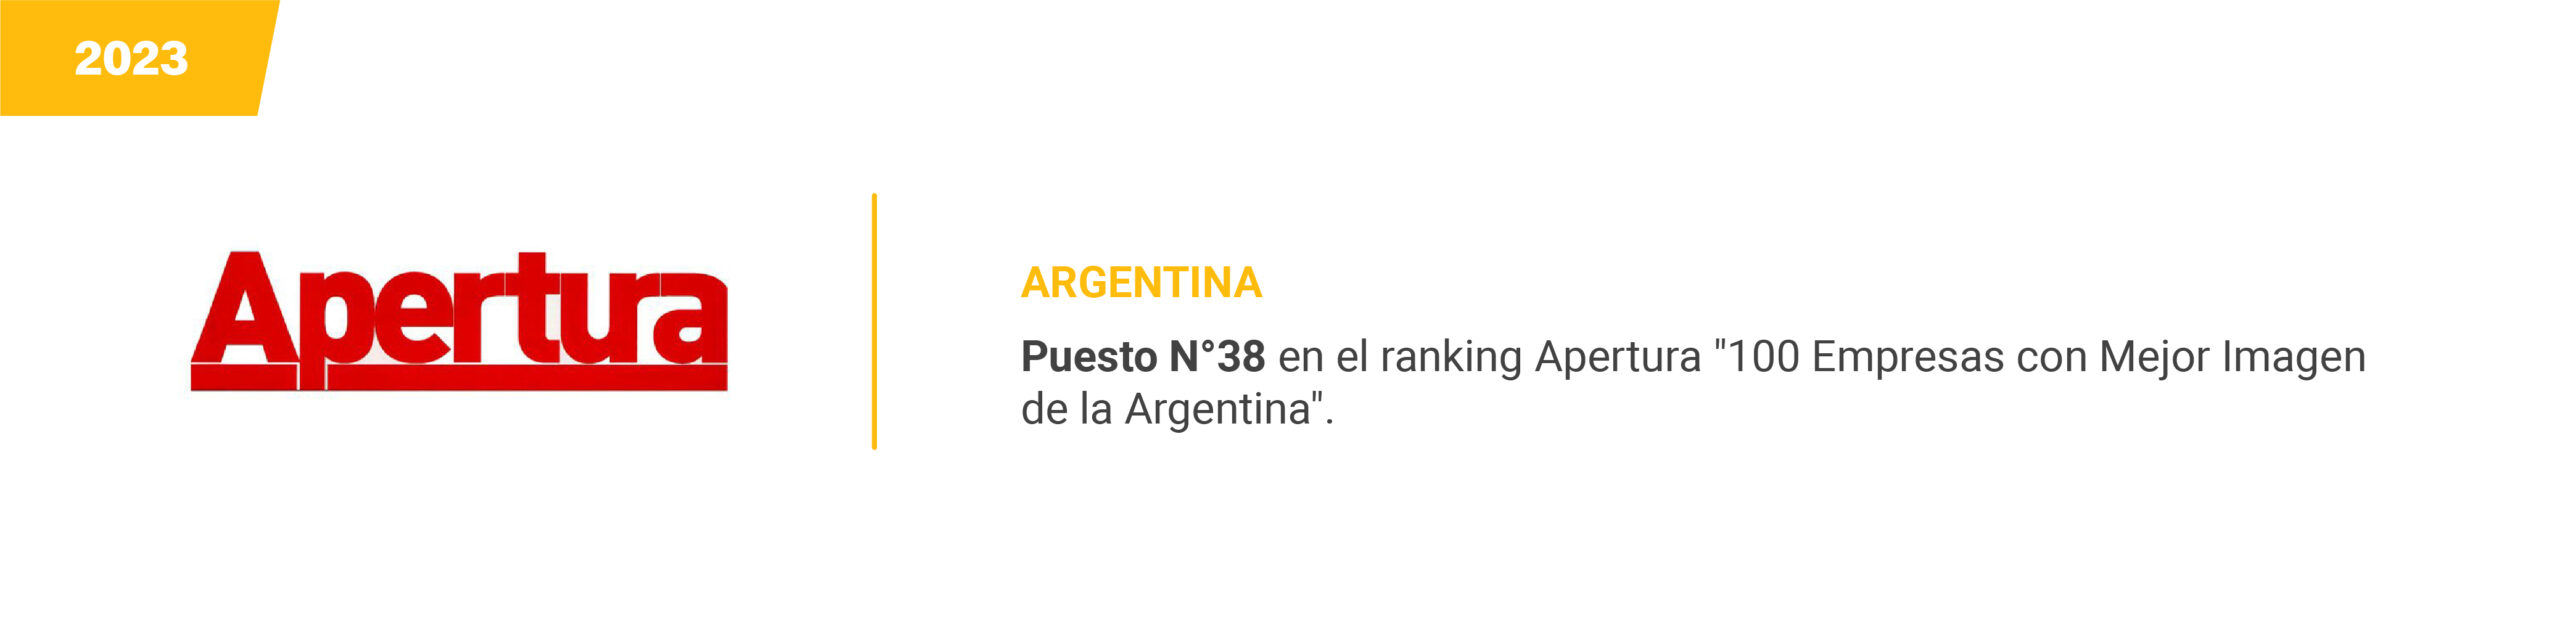 Apertura - Argentina 2023